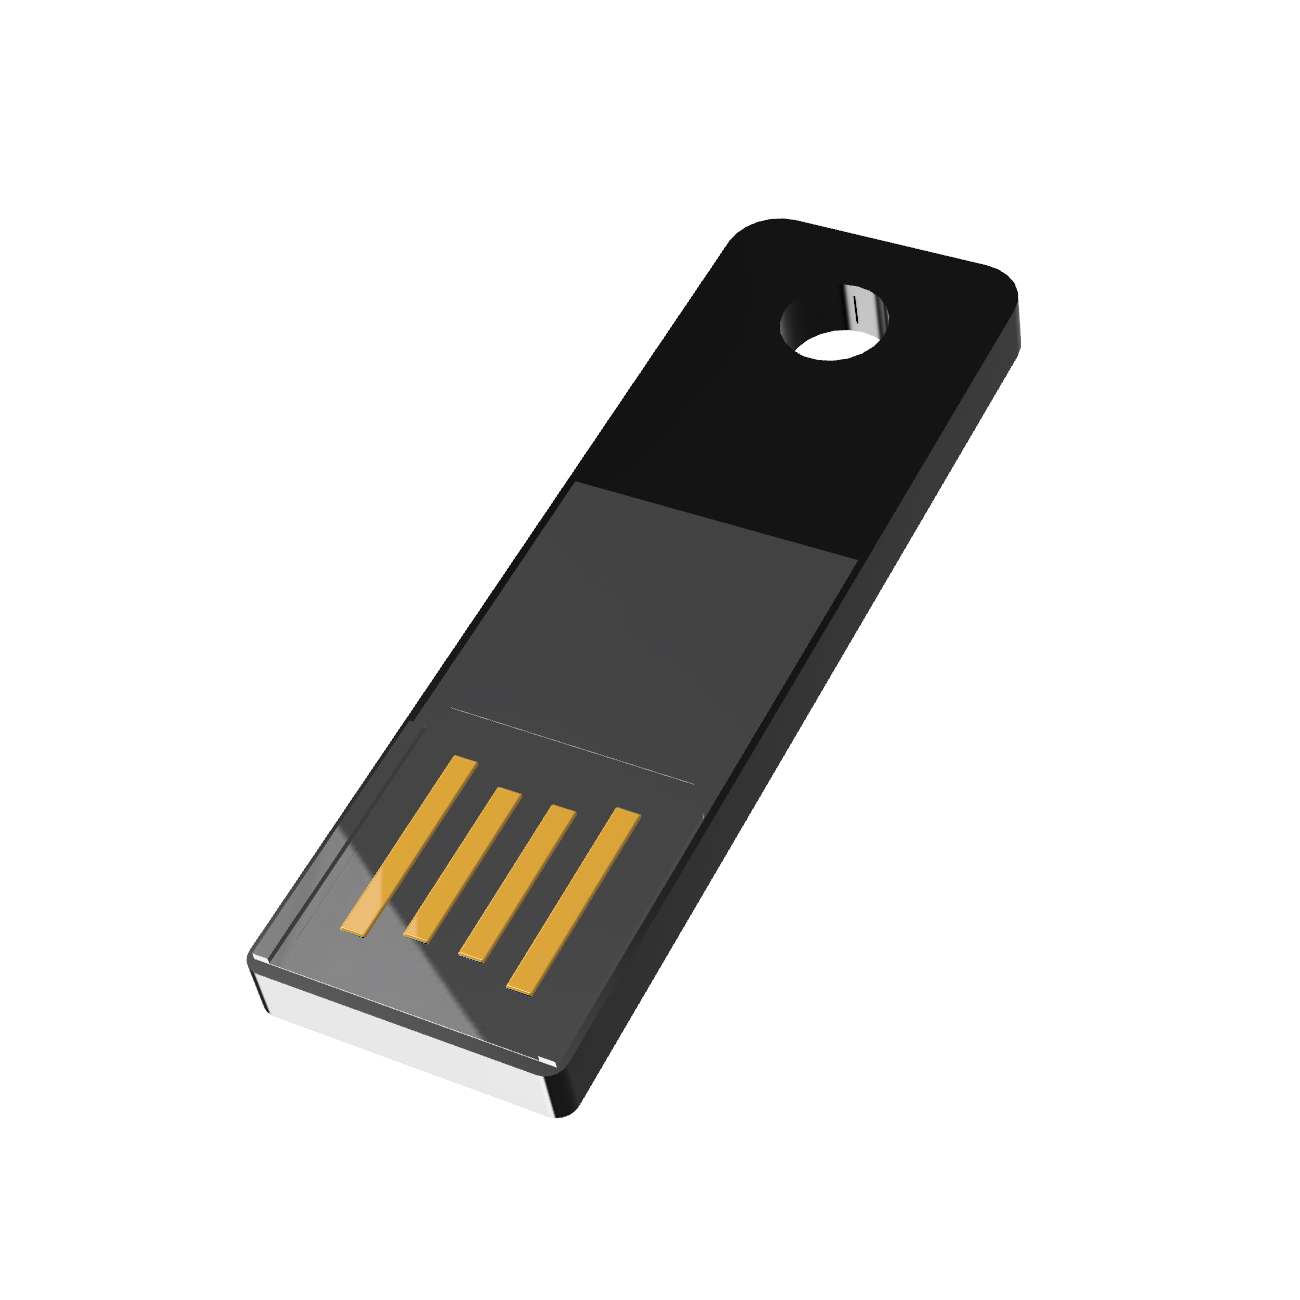 GB) Slim (Schwarz, GERMANY ® Mini USB-Stick 32 USB